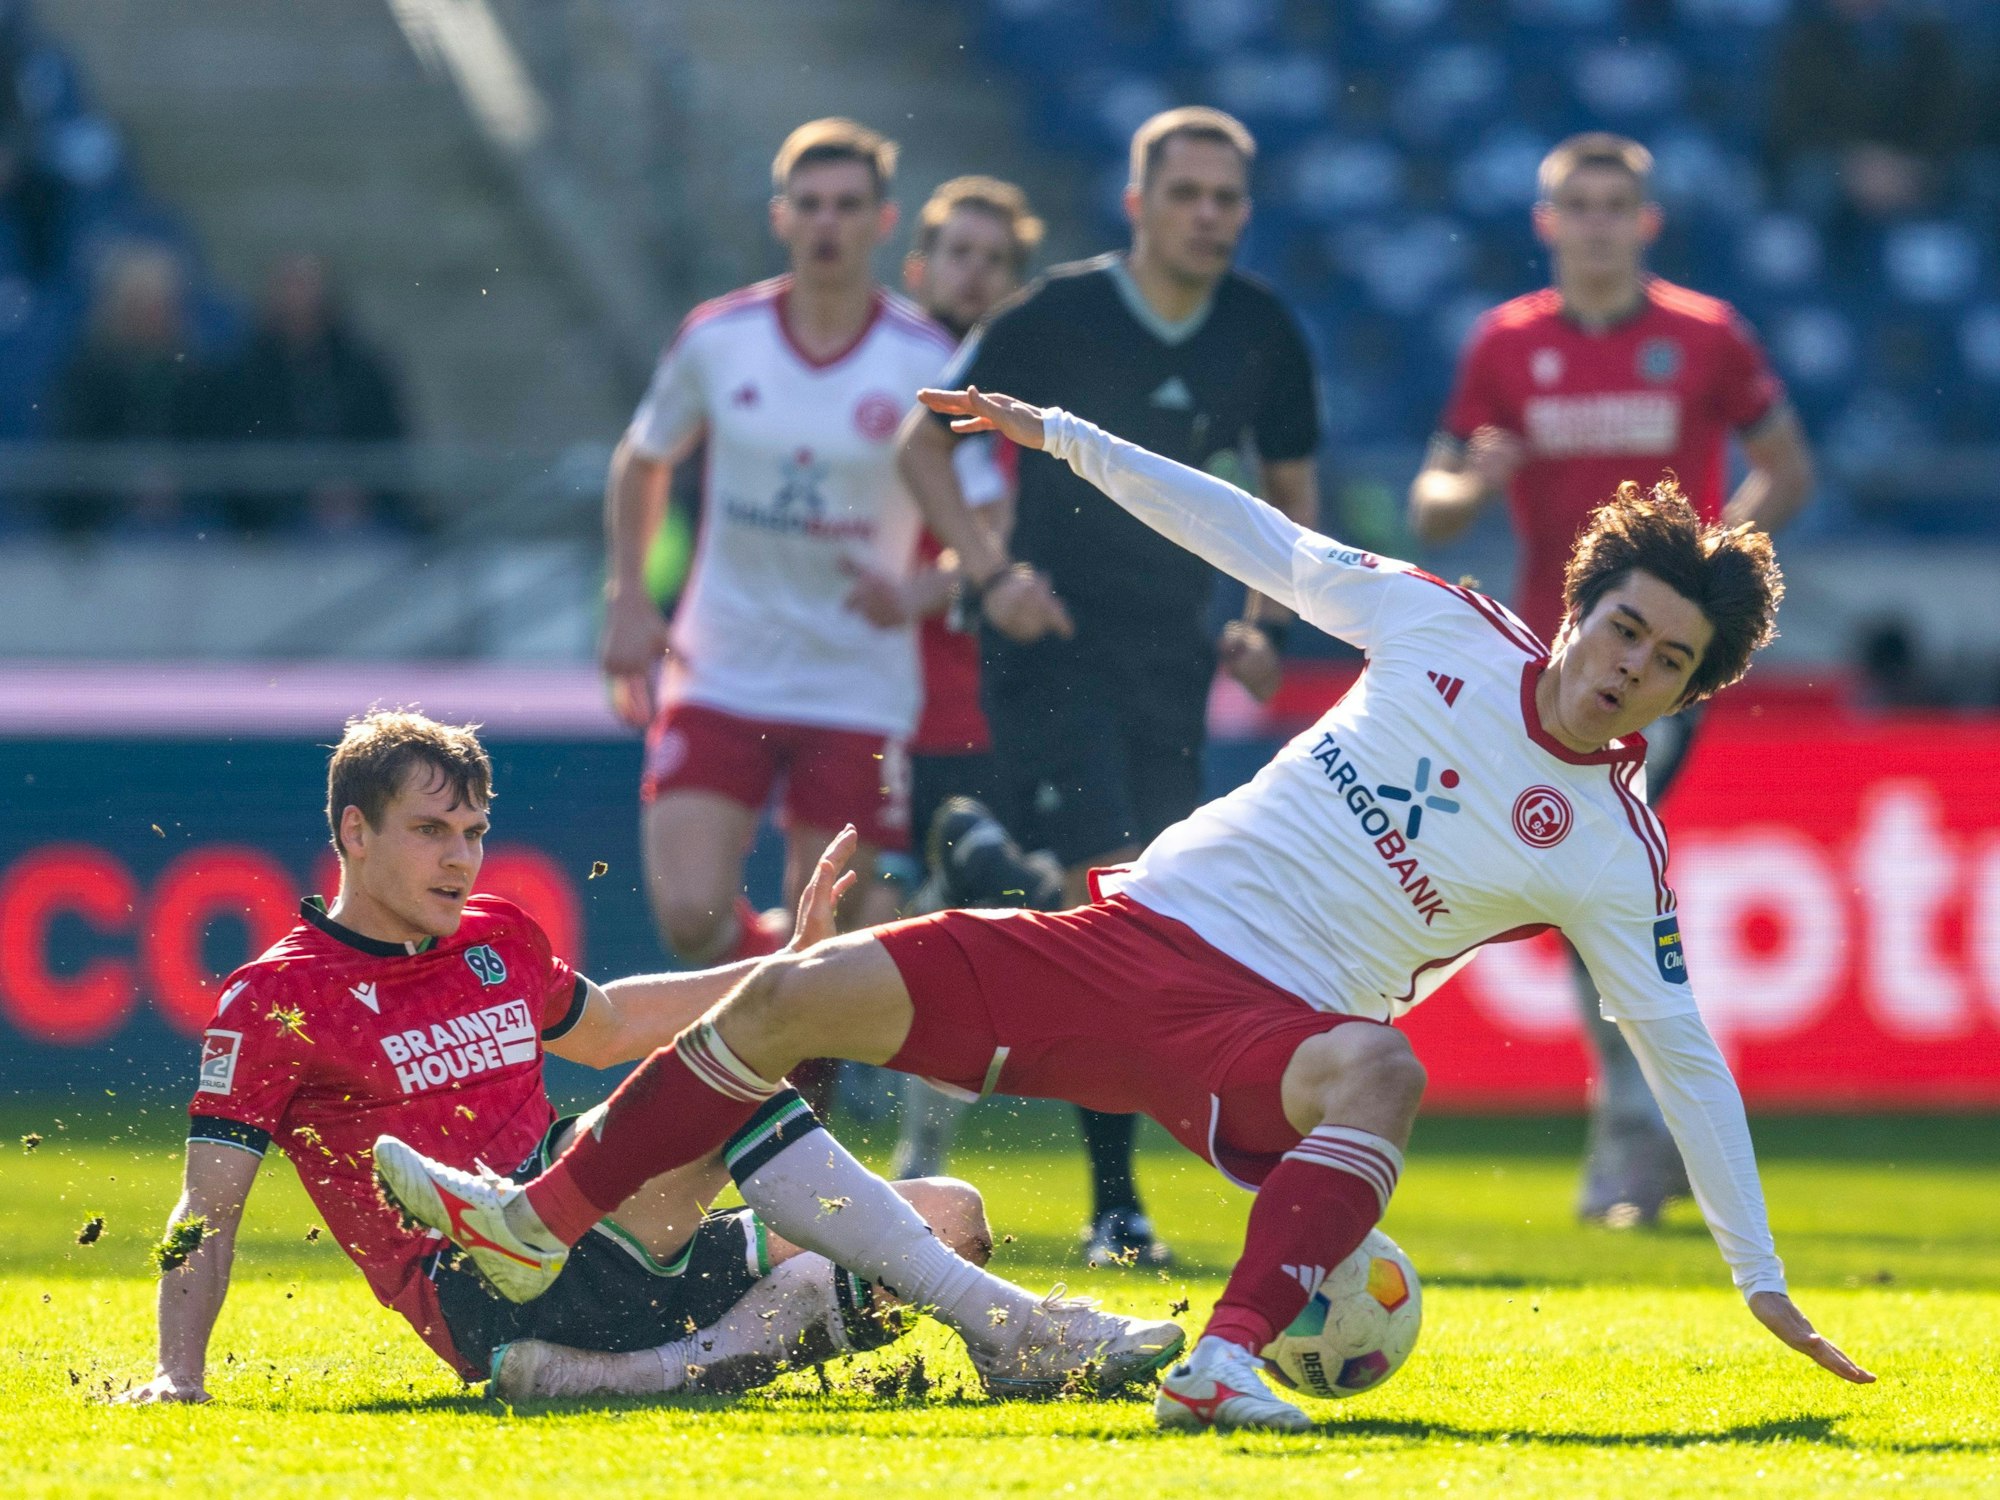 Hannovers Max Christiansen und Fortuna Düsseldorfs Ao Tanaka kämpfen um den Ball.